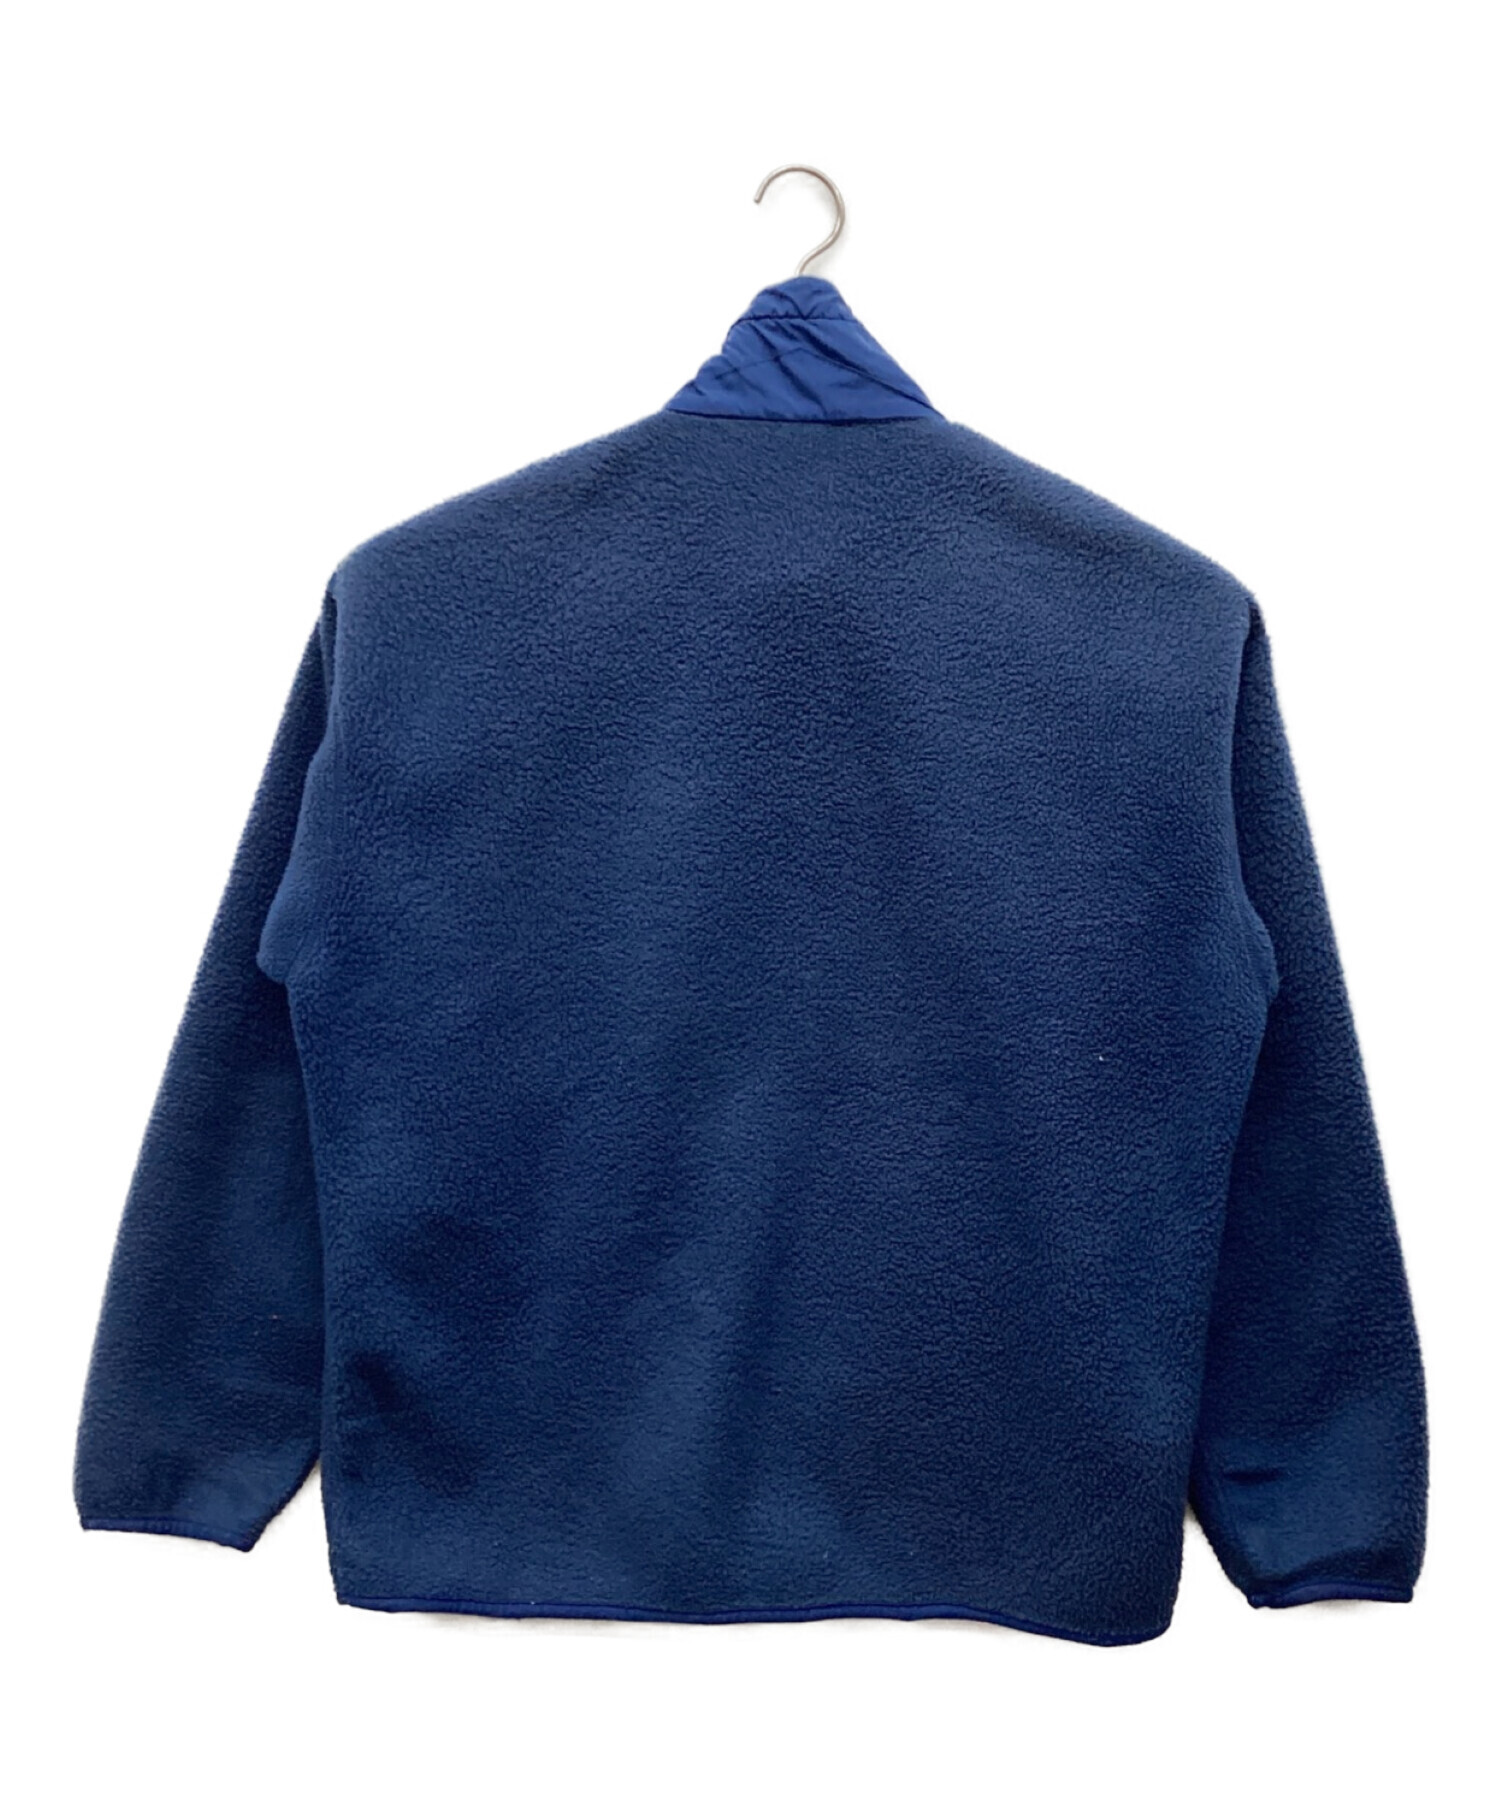 Patagonia (パタゴニア) フリースジャケット ブルー サイズ:L